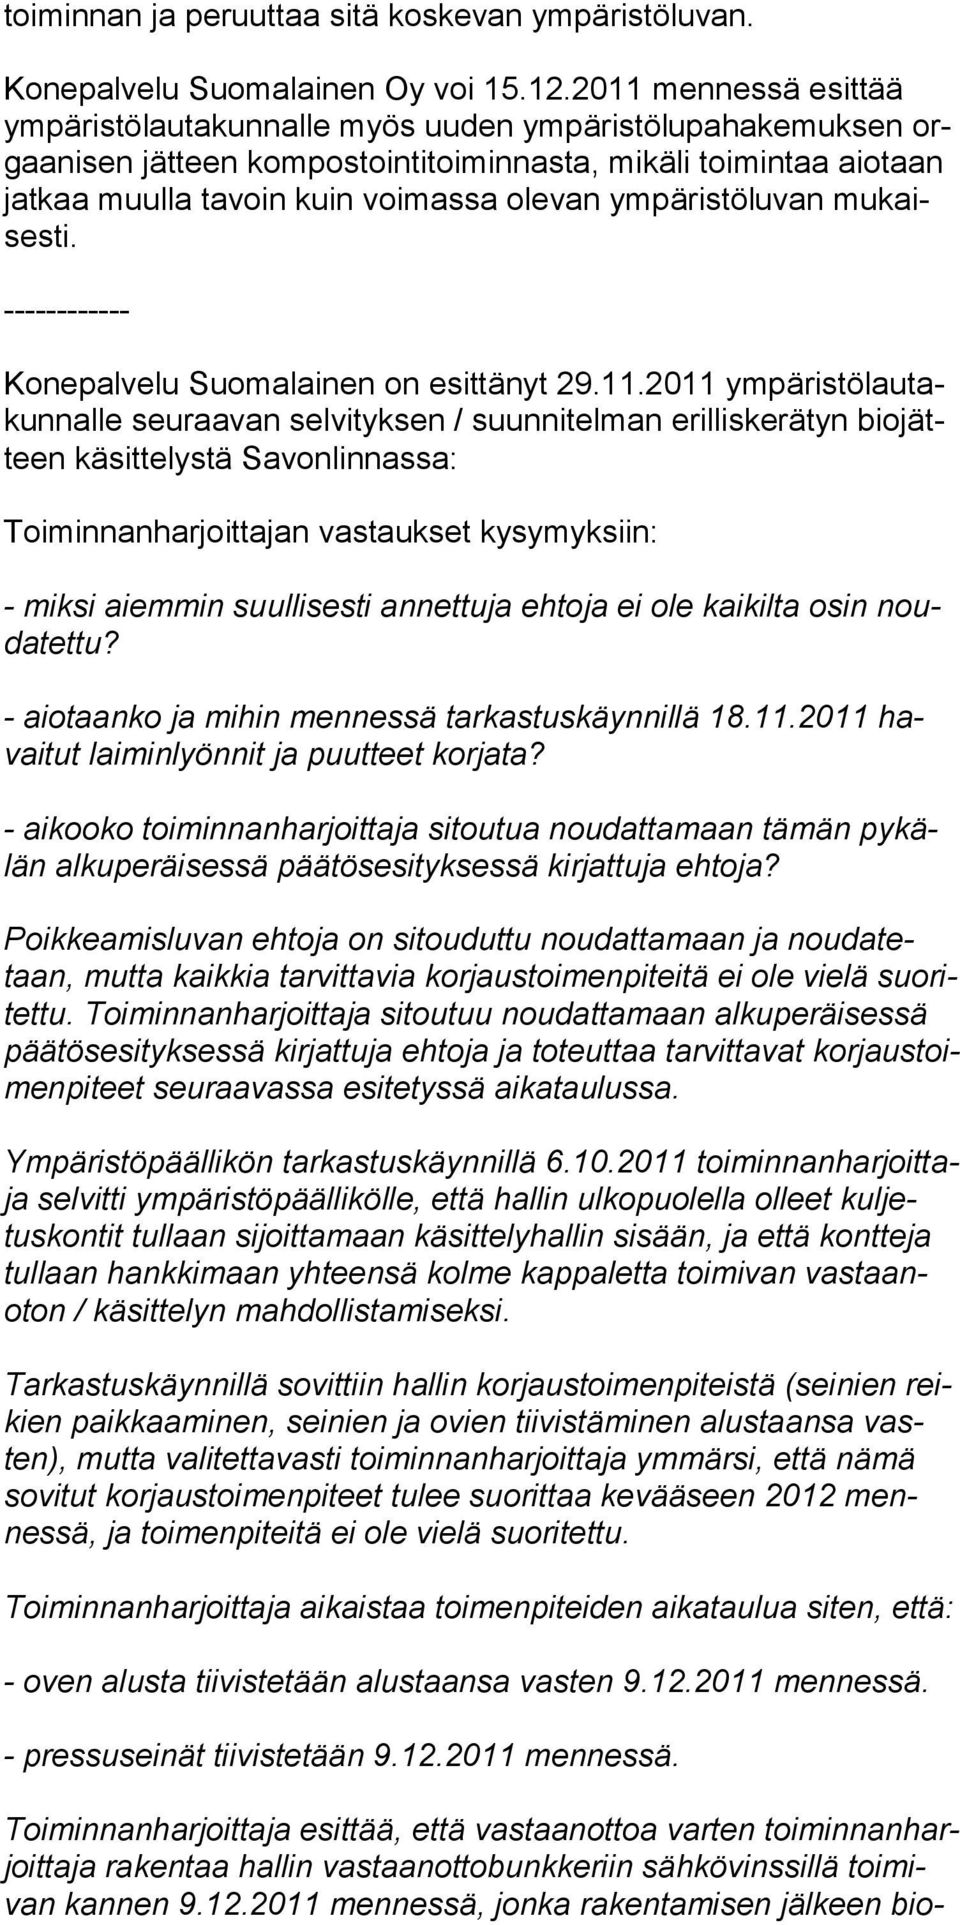 olevan ym pä ris tölu van mukaisesti. ------------ Konepalvelu Suomalainen on esittänyt 29.11.